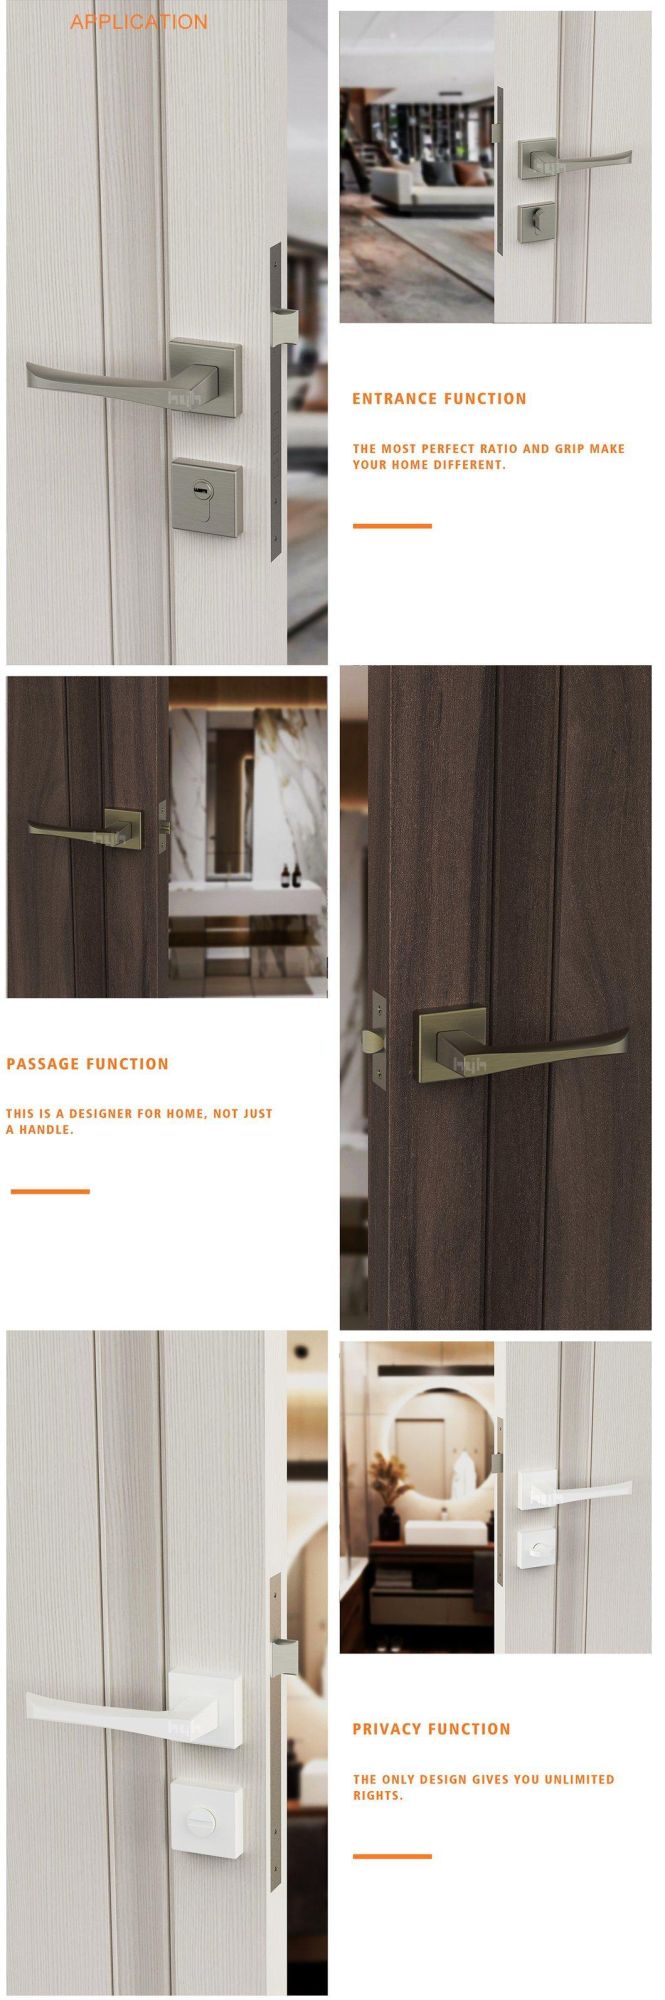 European Style Zinc Alloy Decorative Door Handle for Interior Doors with CE Certificate